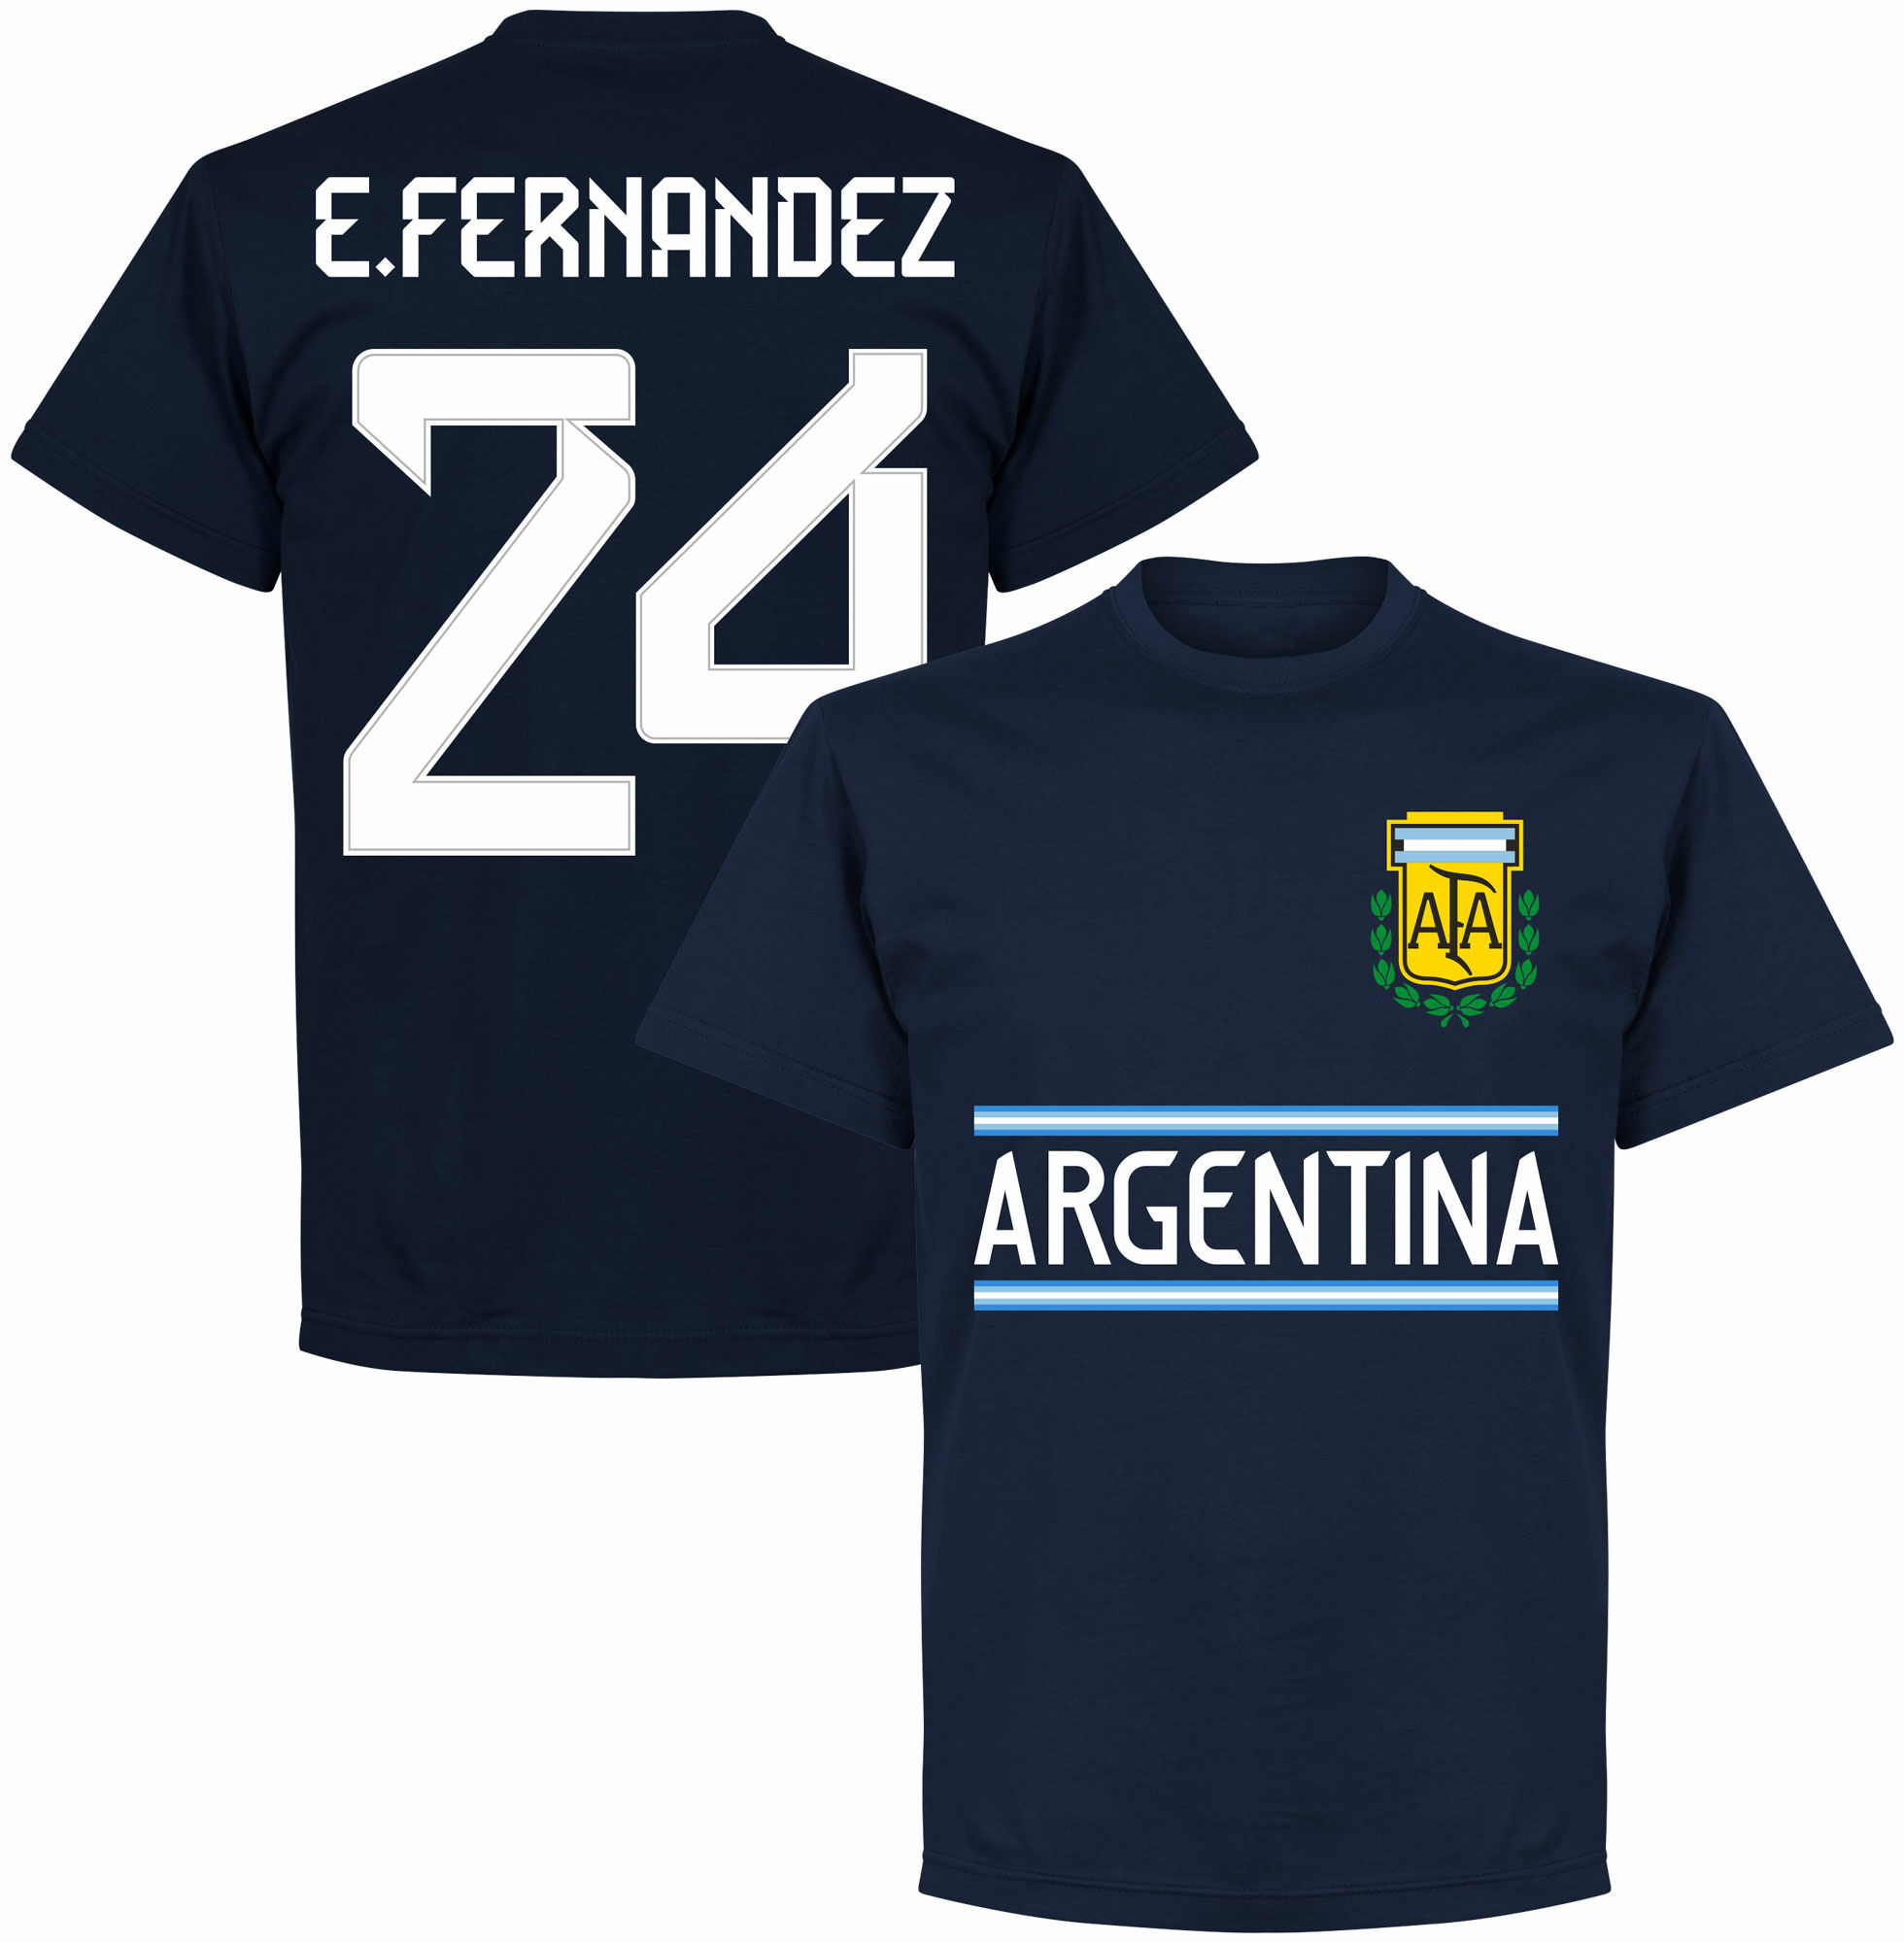 Argentina - Tričko - modré, Enzo Fernández, číslo 24